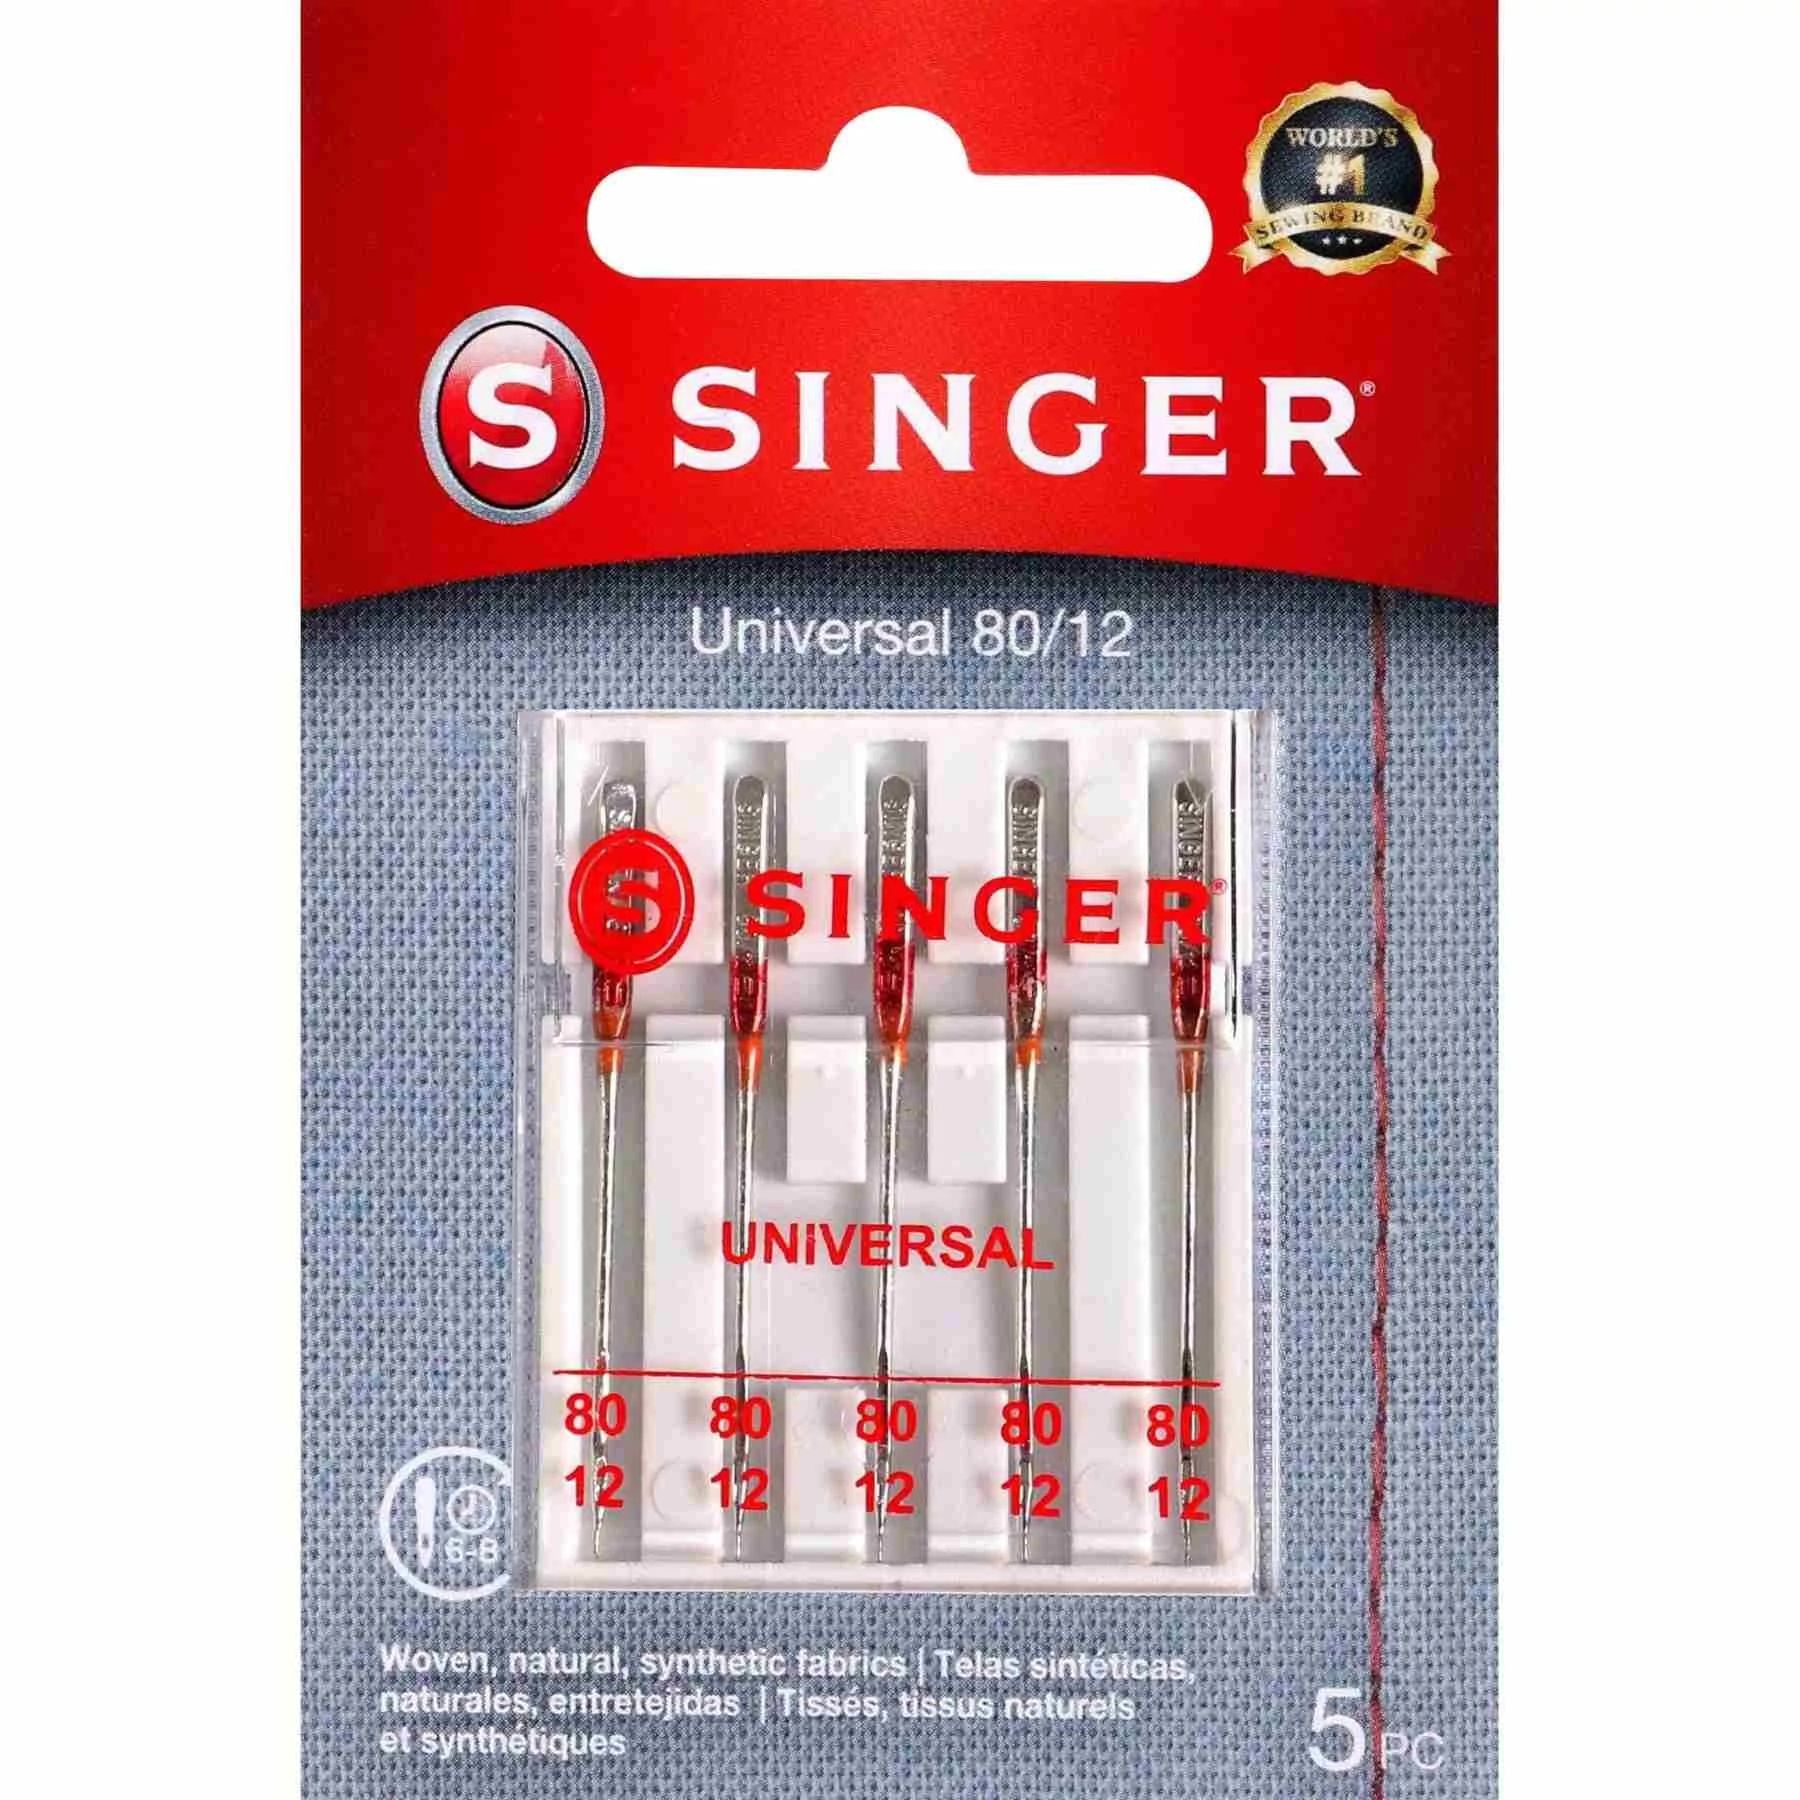 SINGER® Universal Needles 80/12 5-Pack | SINGER®